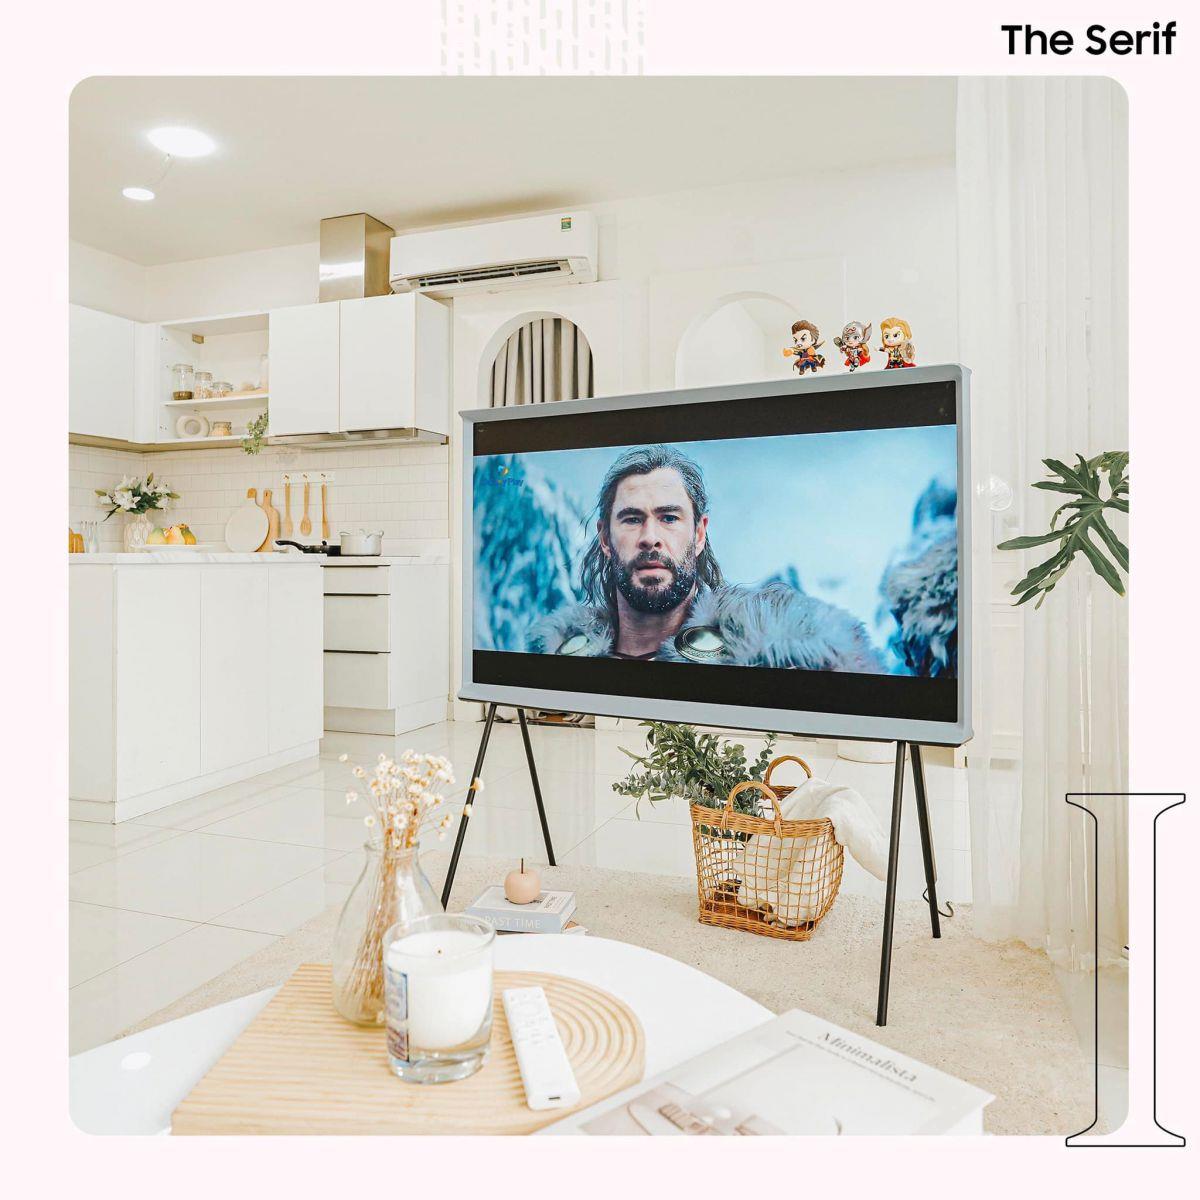 Công nghệ kết hợp nội thất độc đáo như Samsung TV The Serif